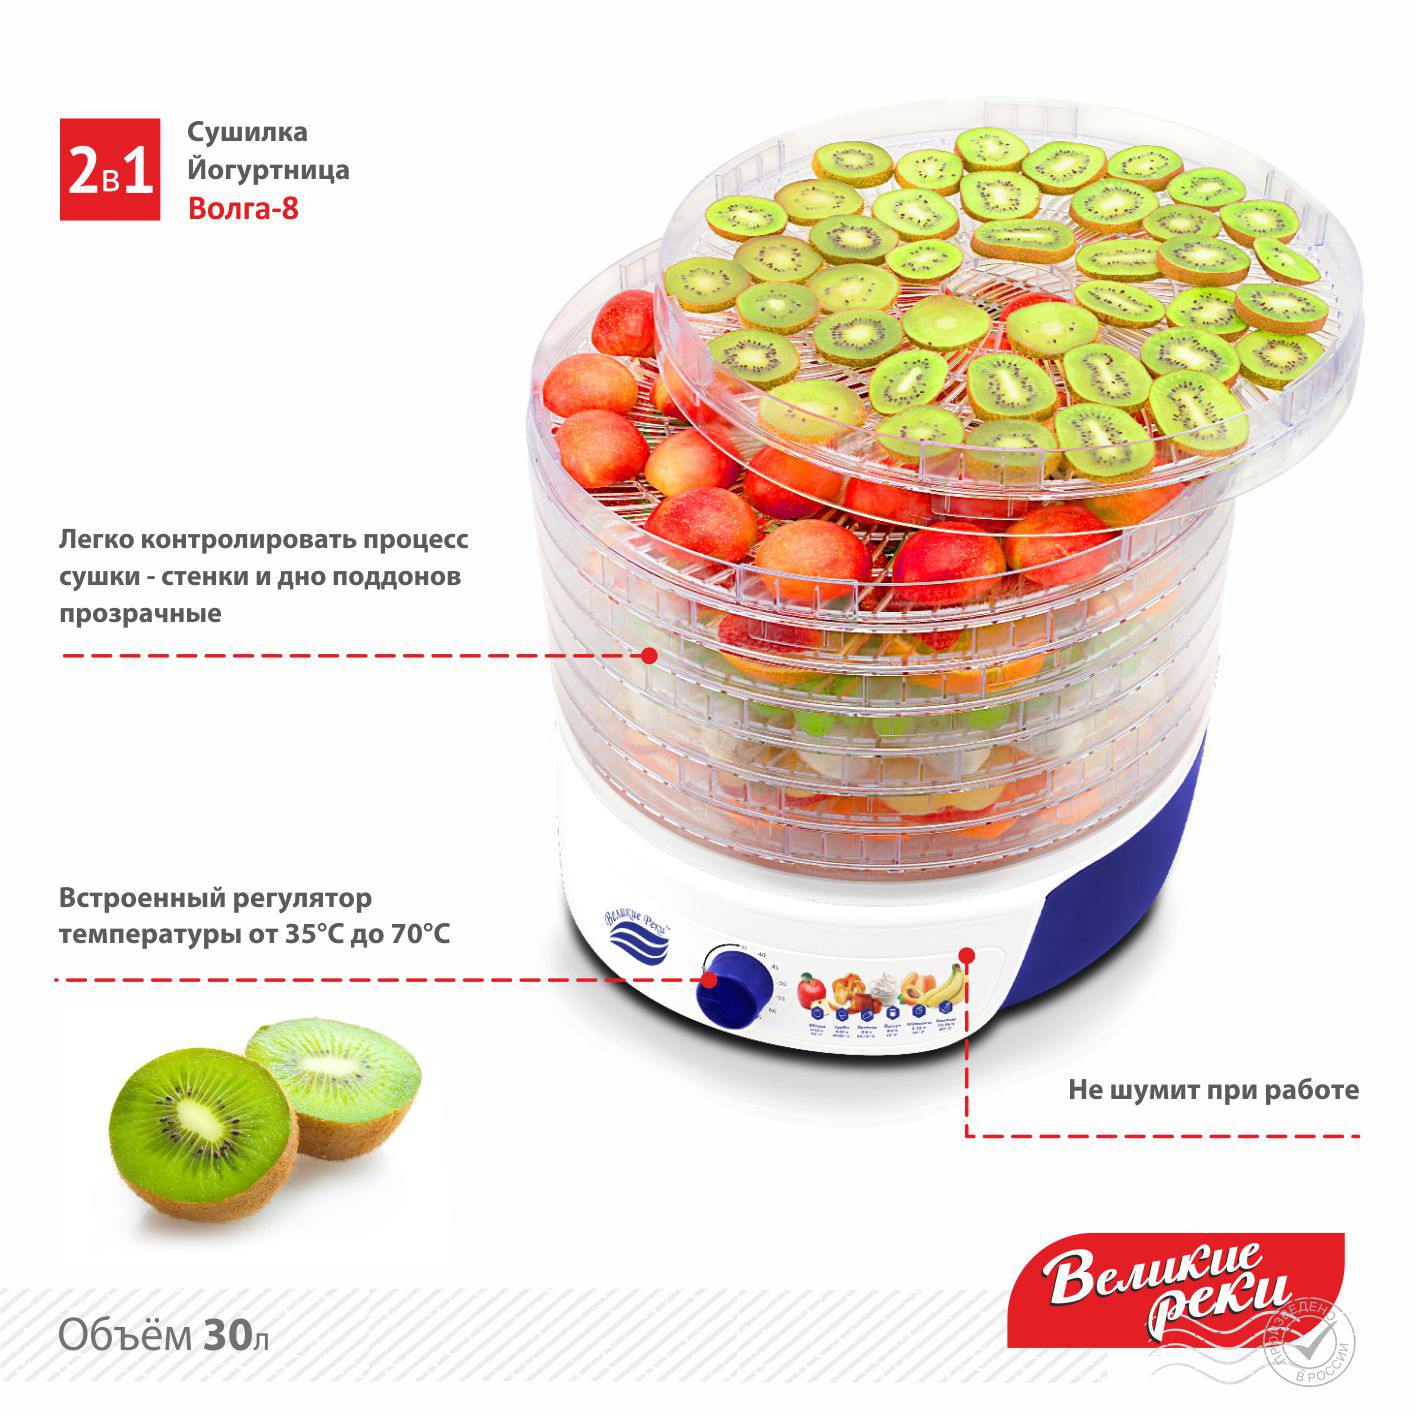 Сушилка для овощей с функцией йогуртница Великие Реки Волга-8, 8 поддонов, 500 Вт, D 33 см